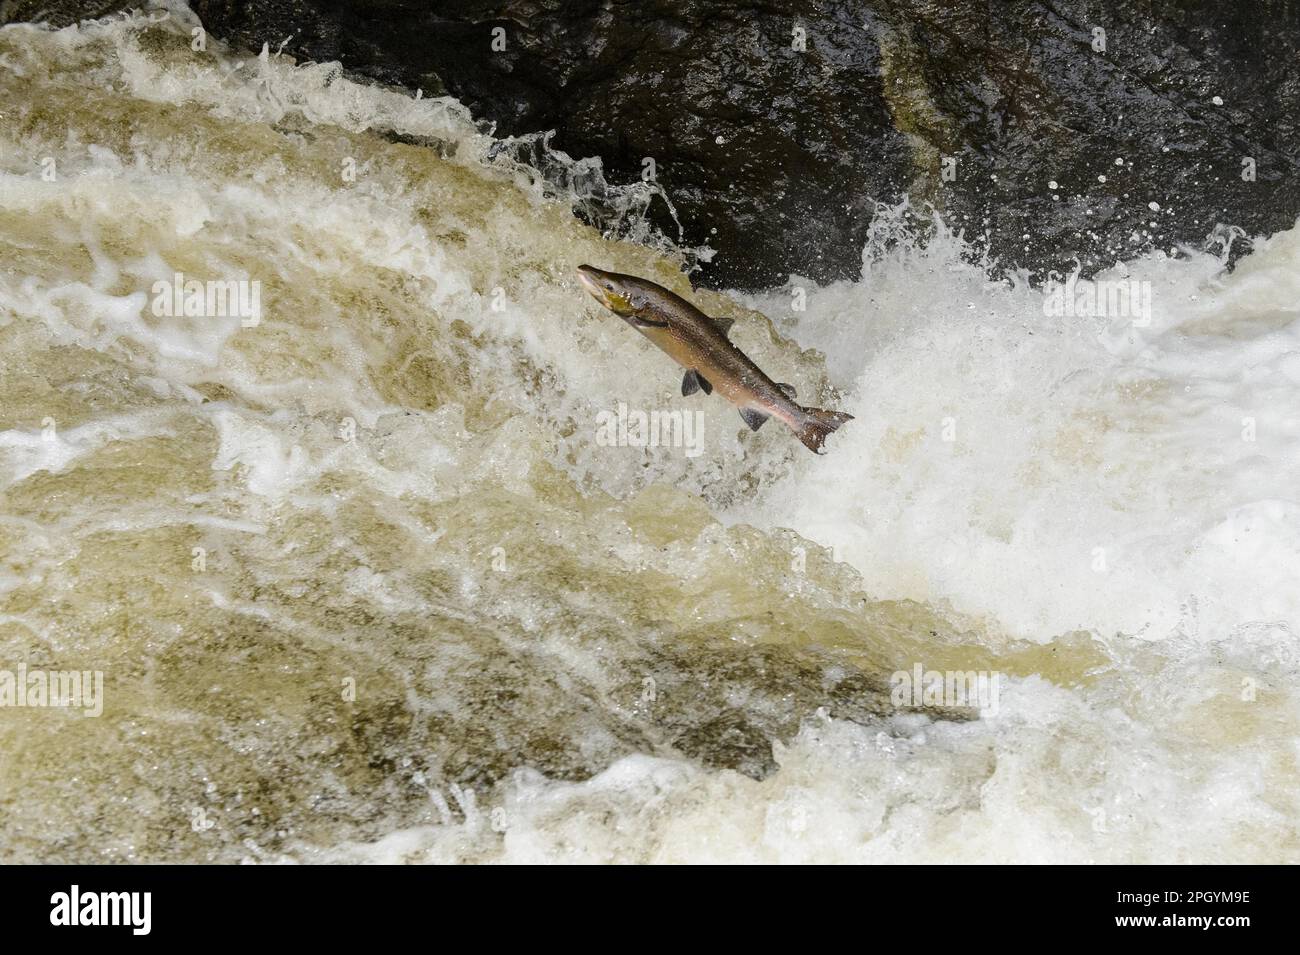 Ausgewachsener atlantischer Lachs (Salmo Salar) springt den Wasserfall hinauf, geht flussaufwärts zur Laichstelle, Buchanty-Auslauf, Fluss Almond, Perth und Kinross Stockfoto